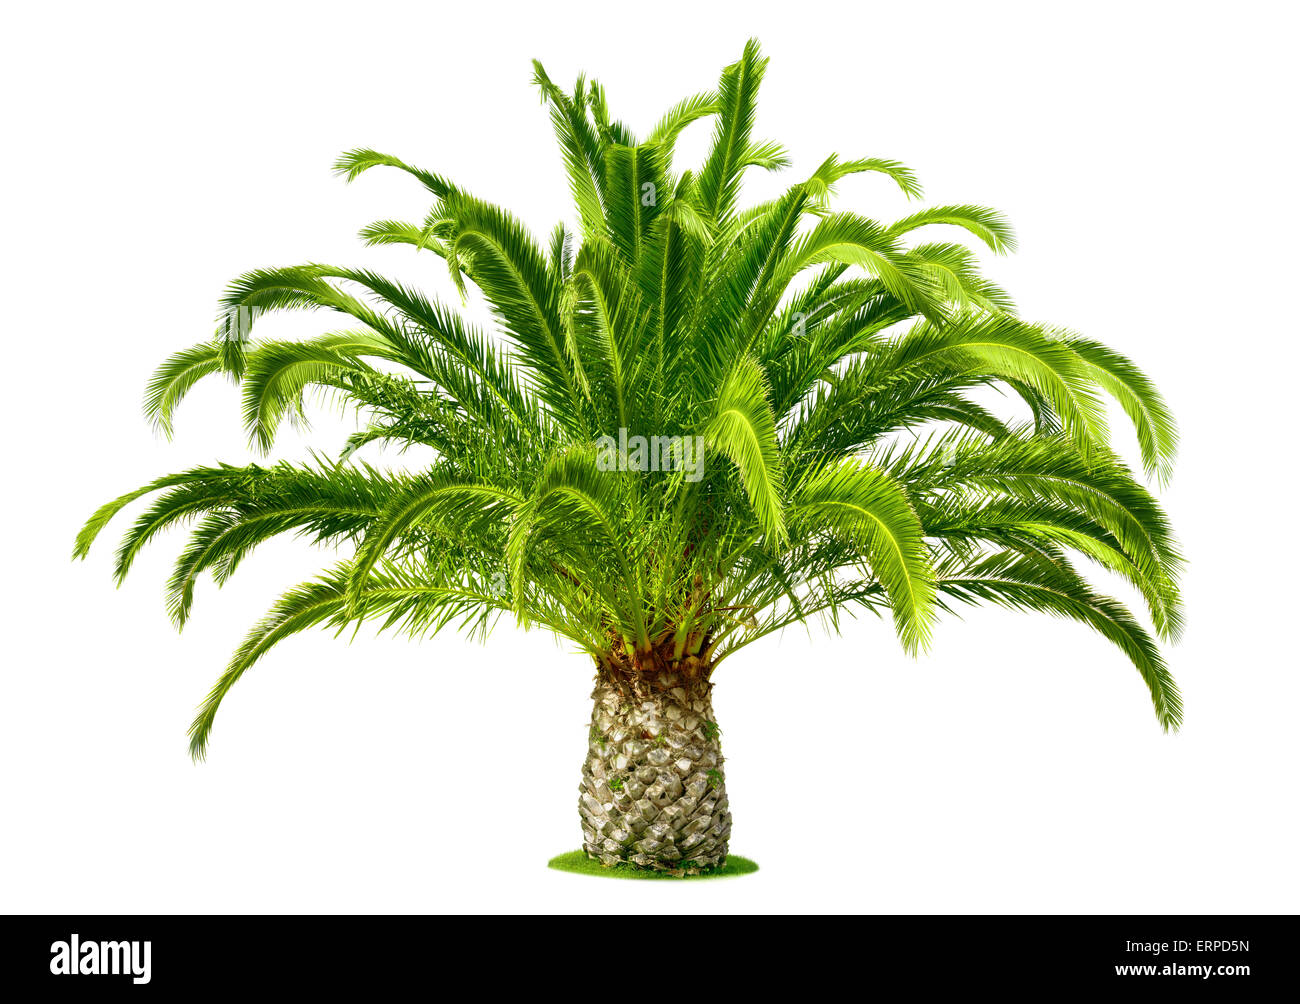 Palmier idéal, avec des feuilles vert frais et un tronc court, isolé sur blanc pur Banque D'Images